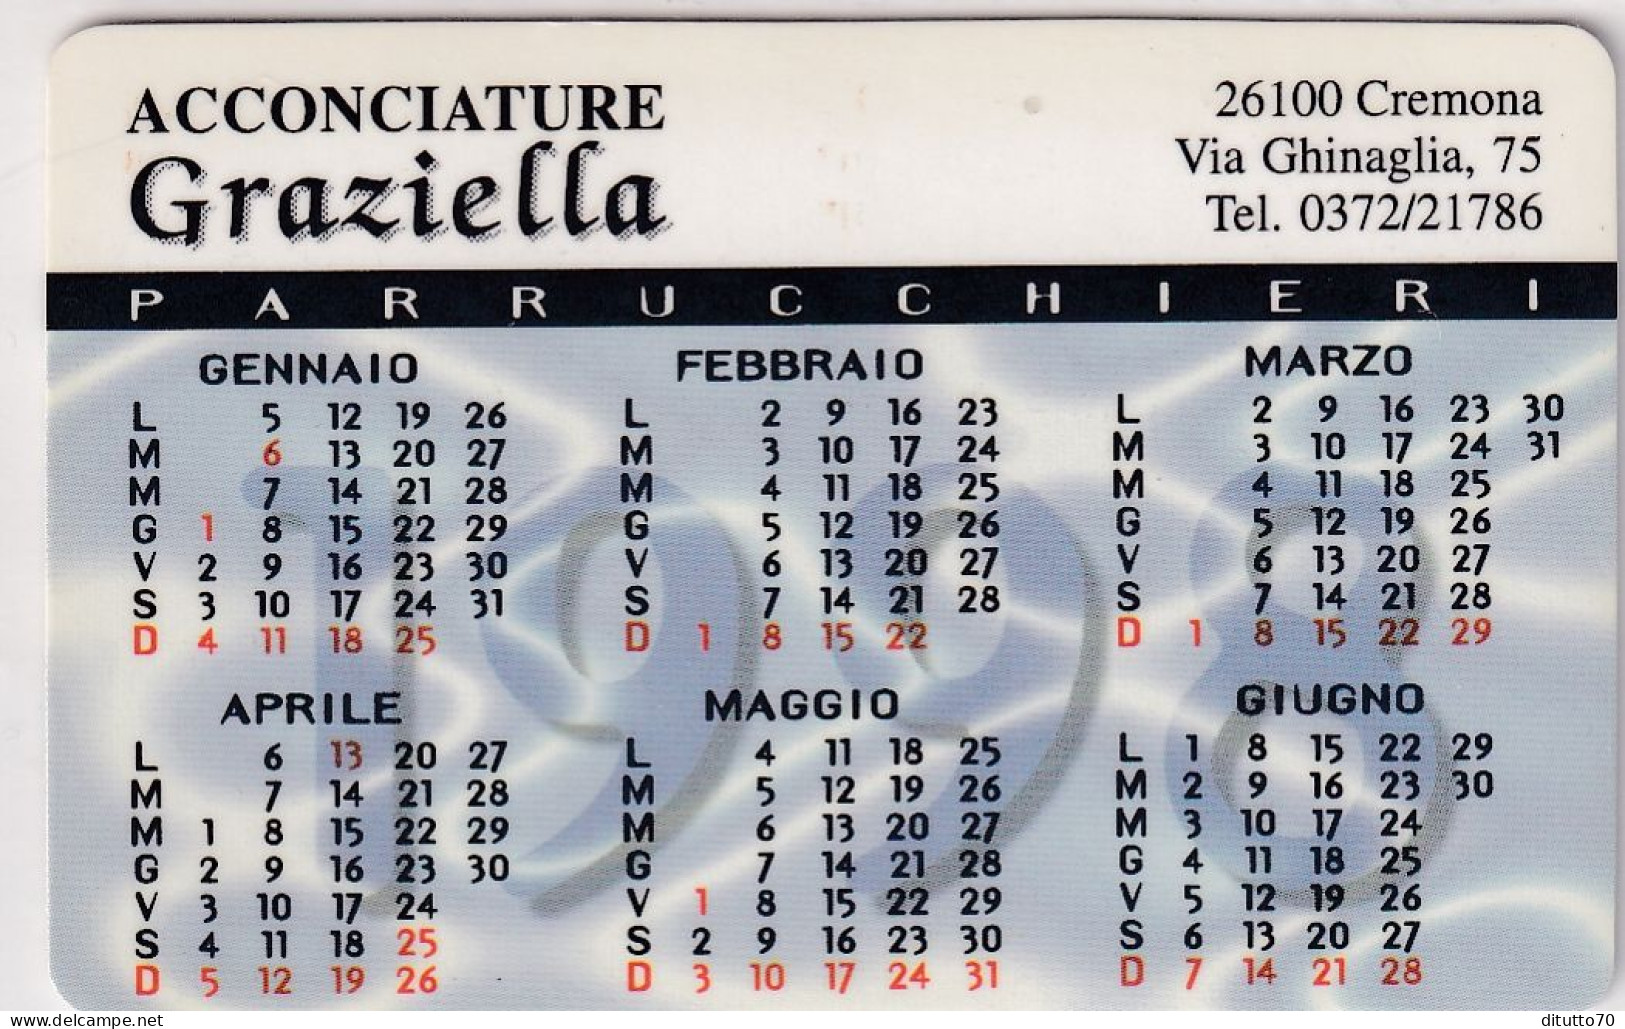 Calendarietto - Acconciature - Graziella - Cremona - Anno 1998 - Small : 1991-00